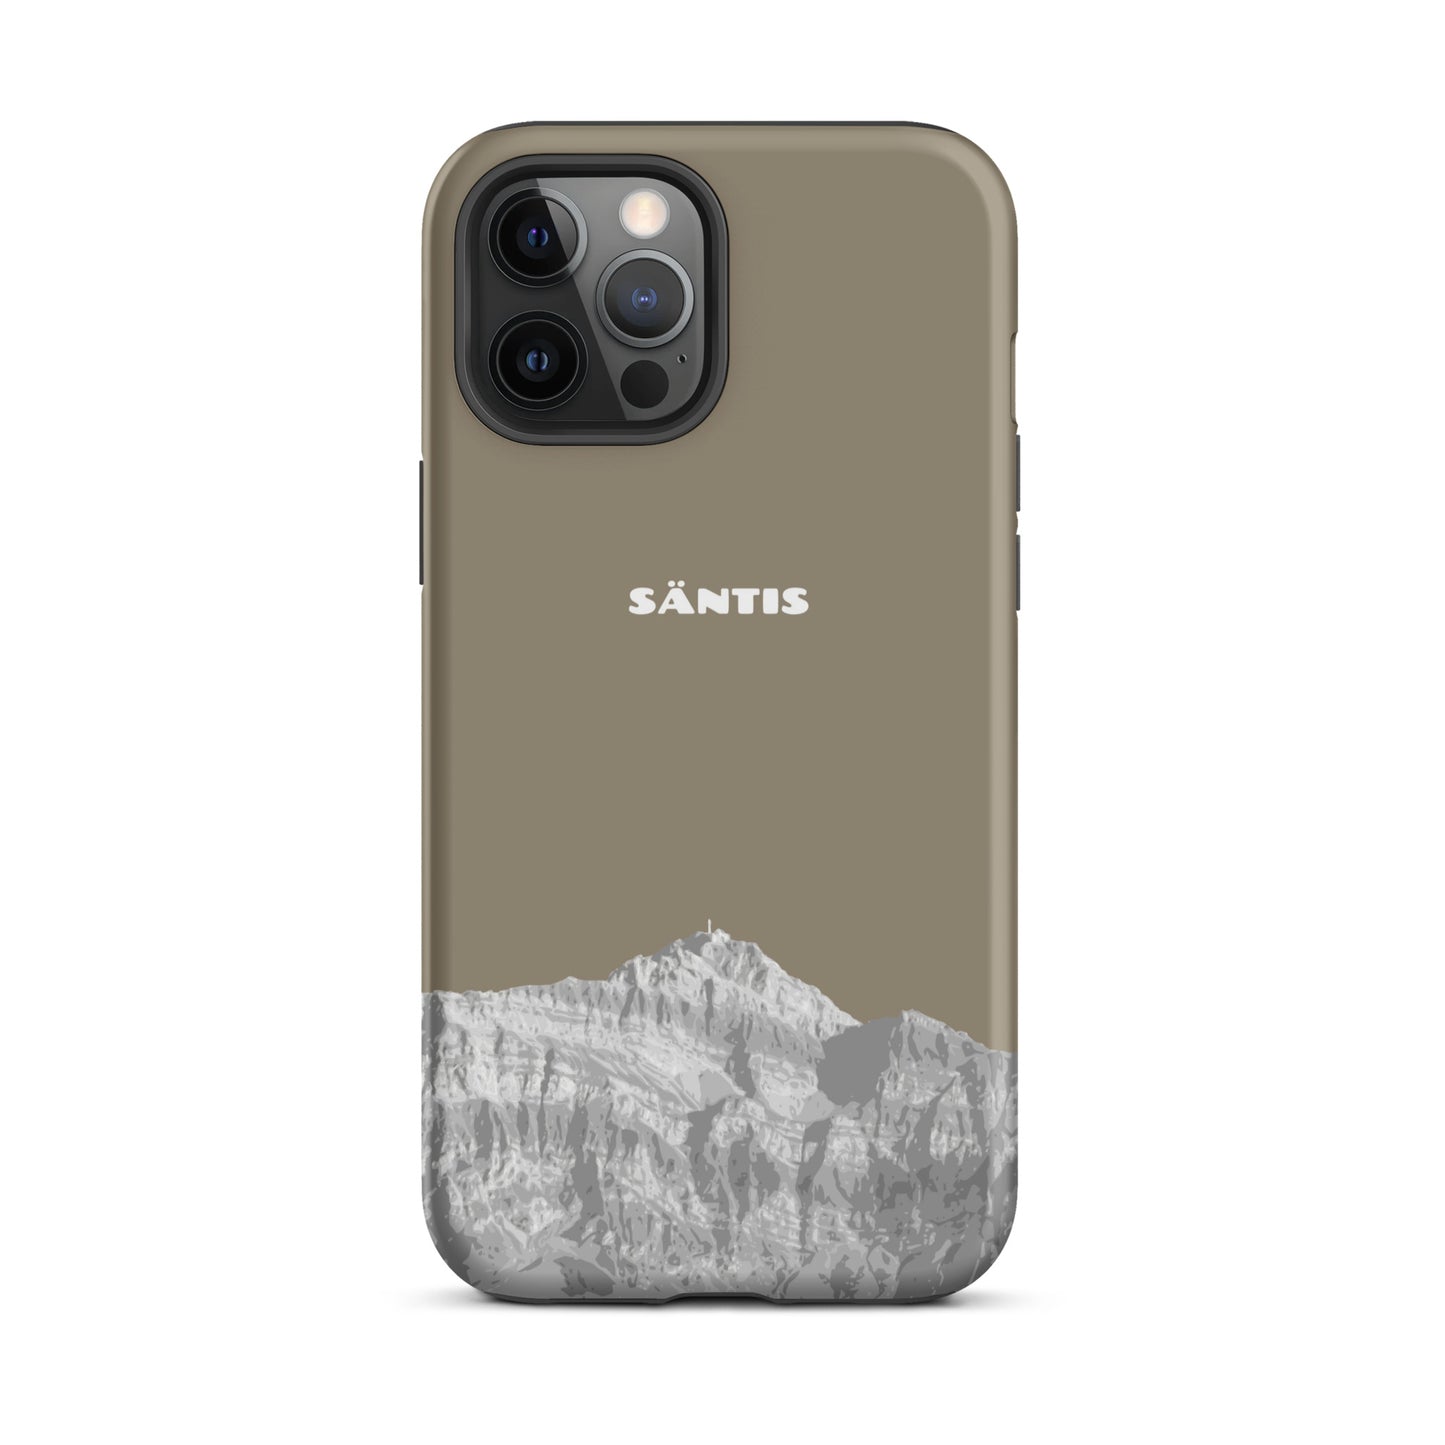 Hülle für das iPhone 12 Pro Max von Apple in der Farbe Graubraun, dass den Säntis im Alpstein zeigt.